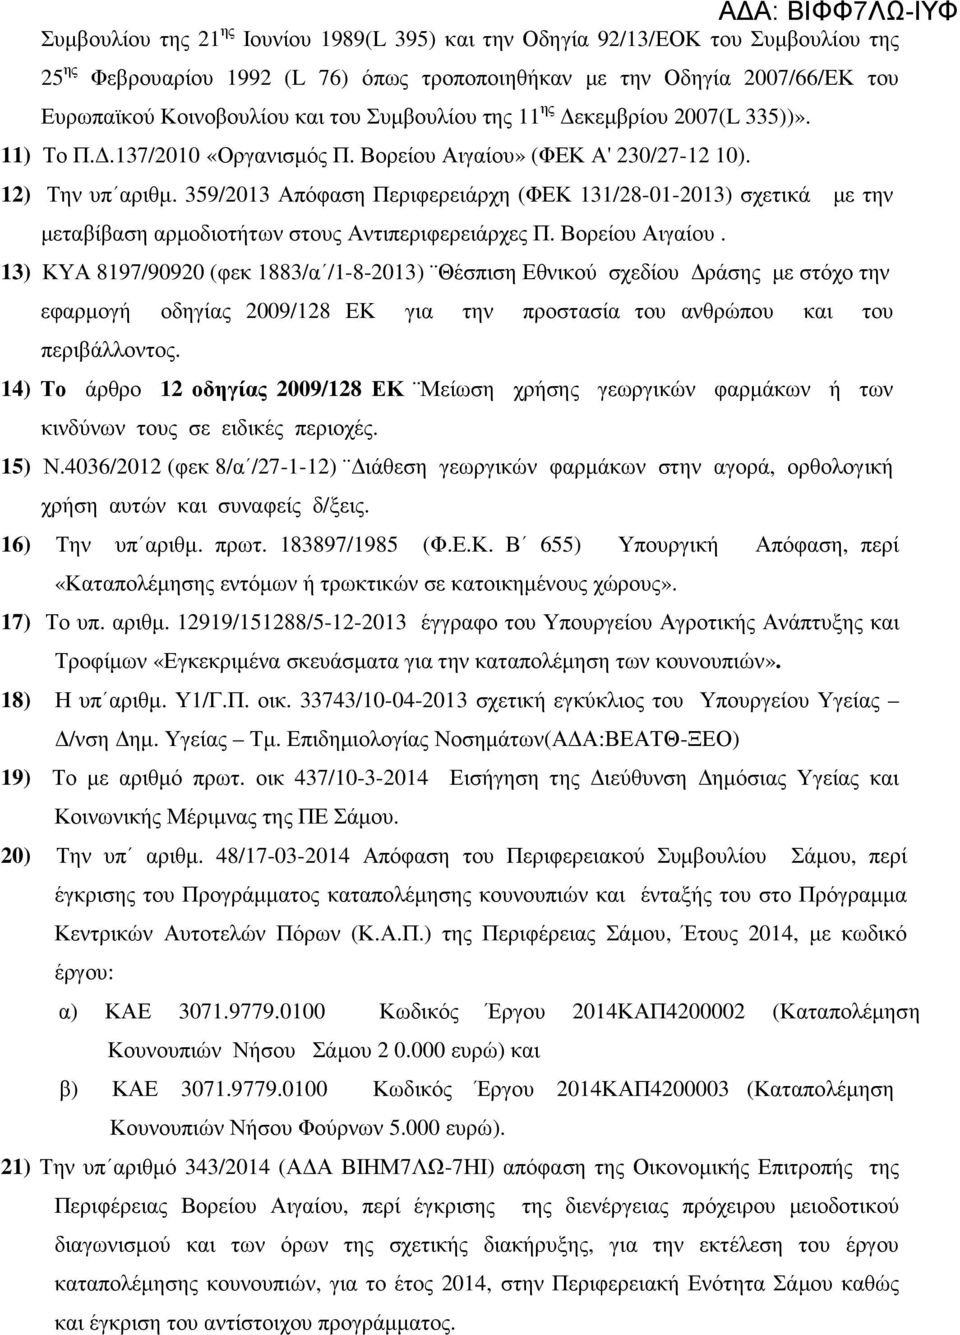 359/2013 Απόφαση Περιφερειάρχη (ΦΕΚ 131/28-01-2013) σχετικά µε την µεταβίβαση αρµοδιοτήτων στους Αντιπεριφερειάρχες Π. Βορείου Αιγαίου.